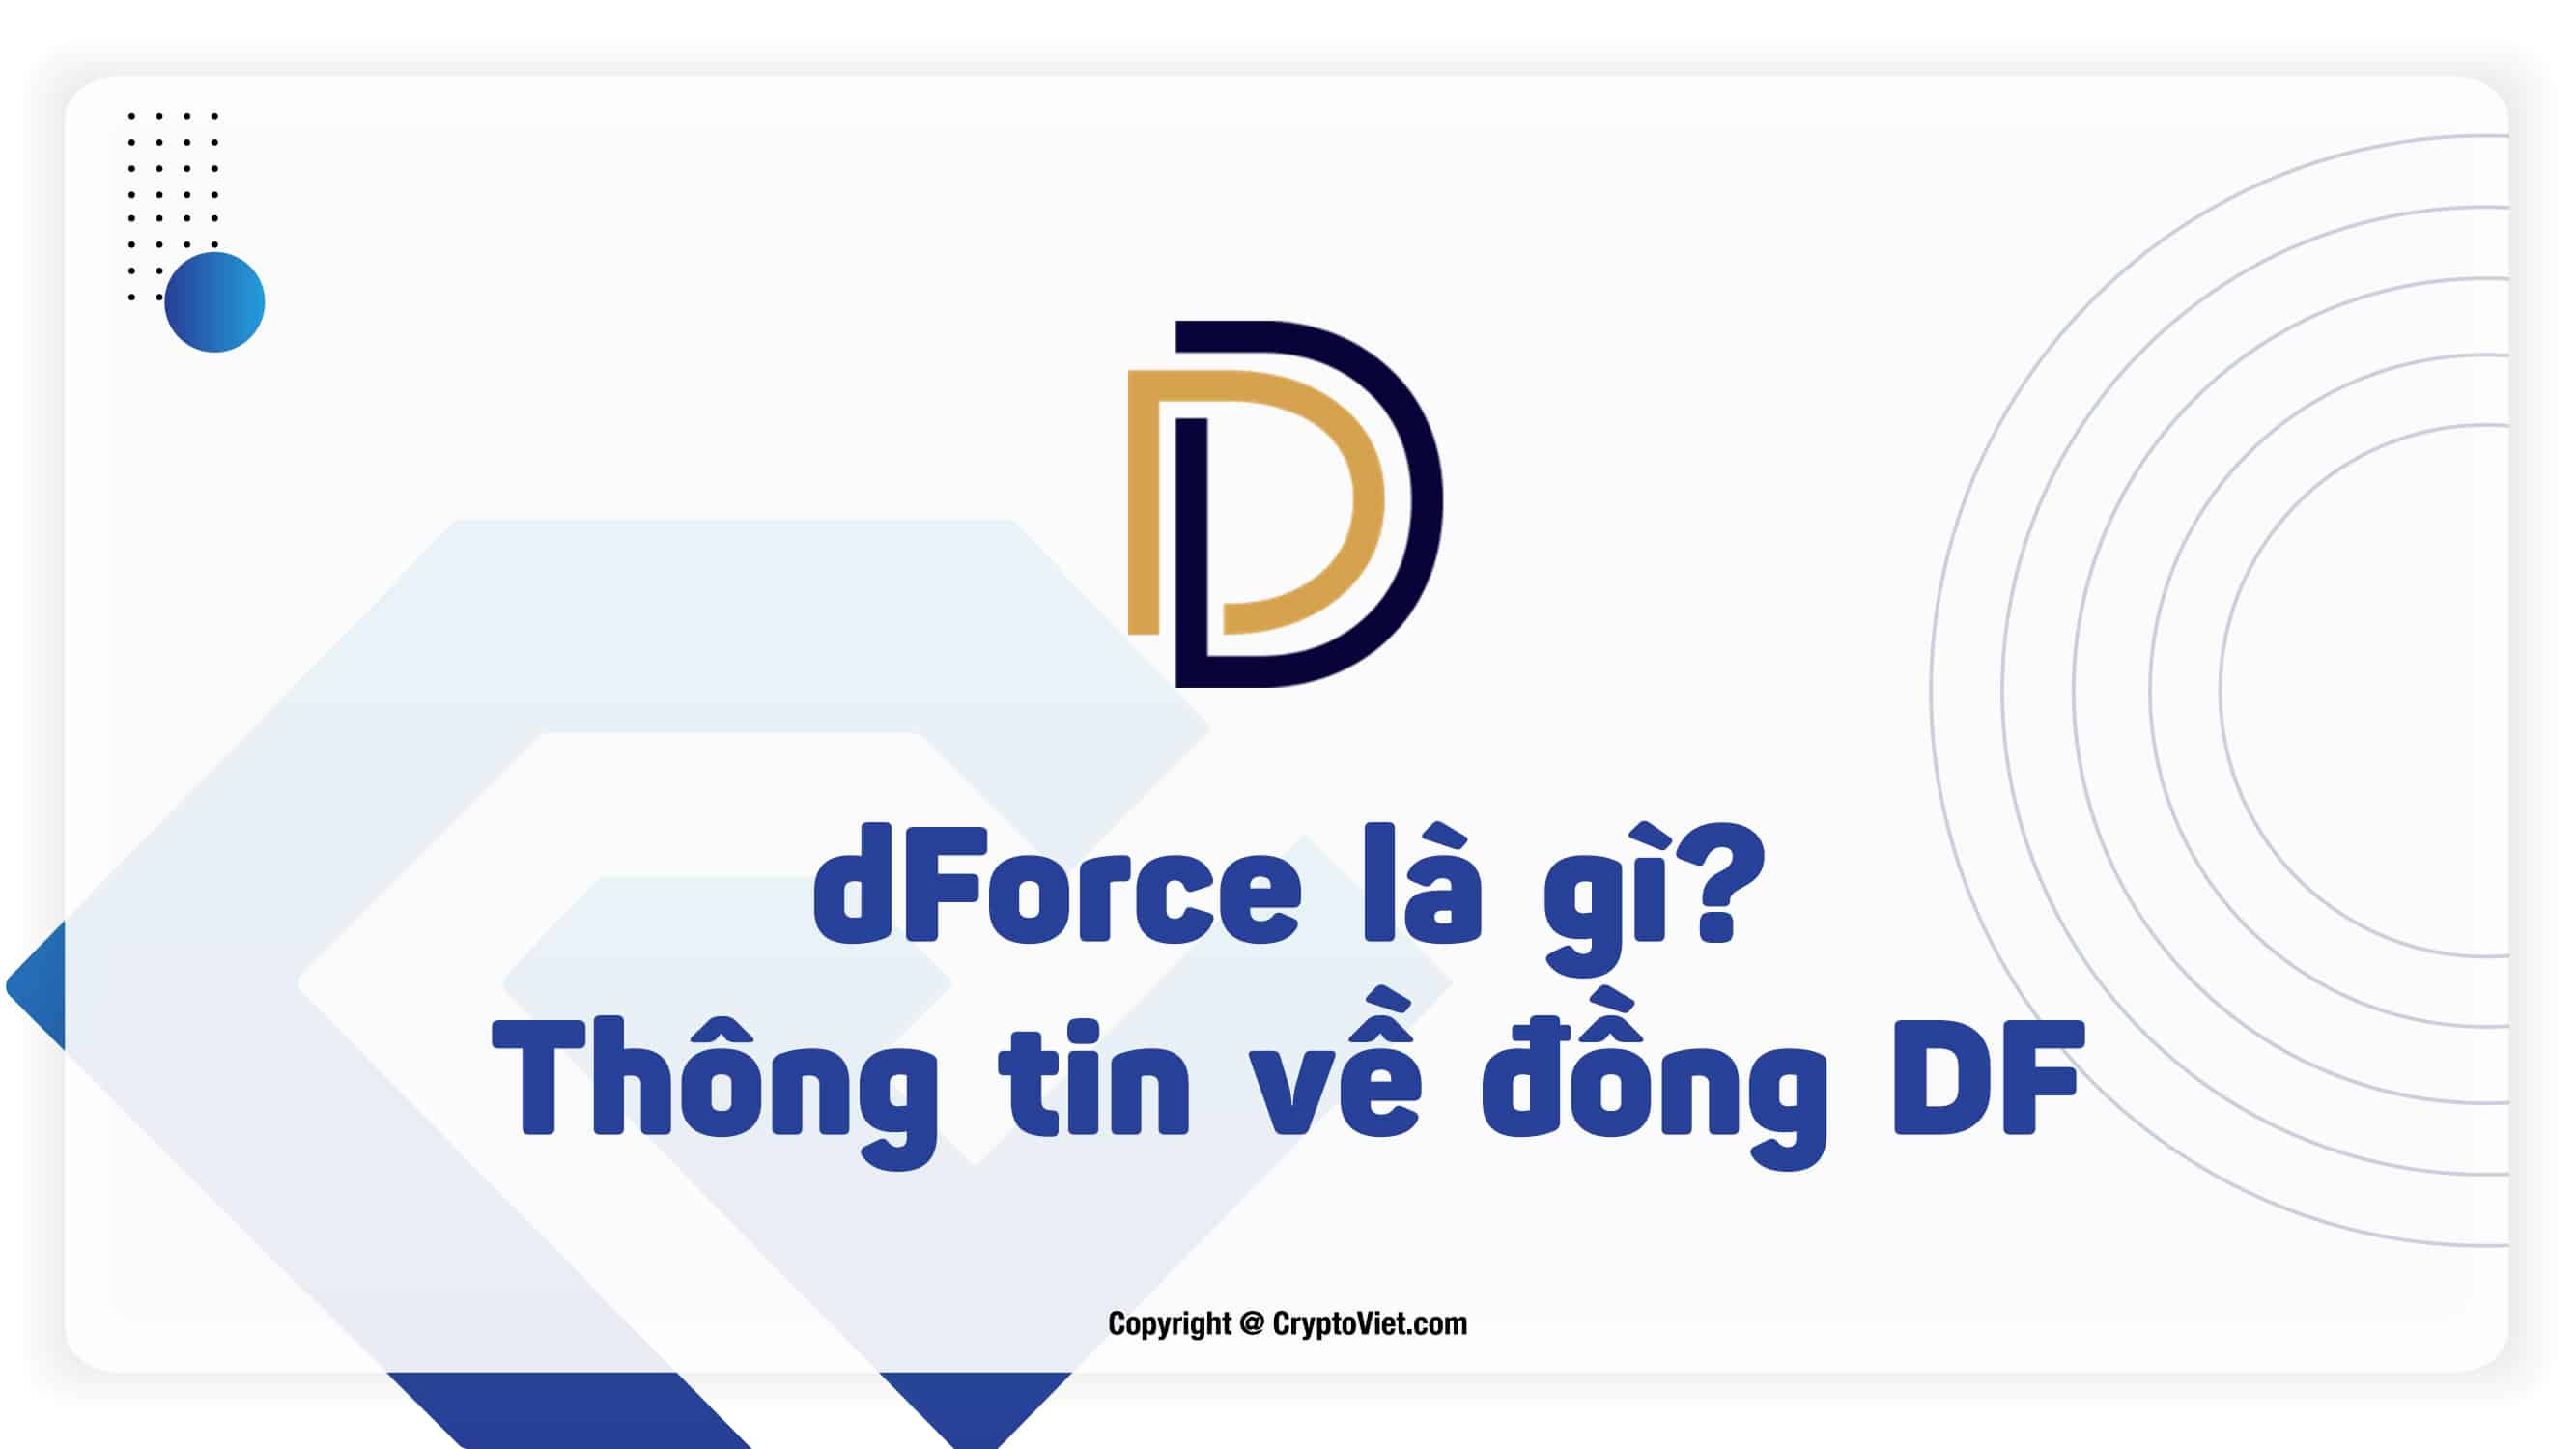 dForce là gì? Thông tin về đồng DF